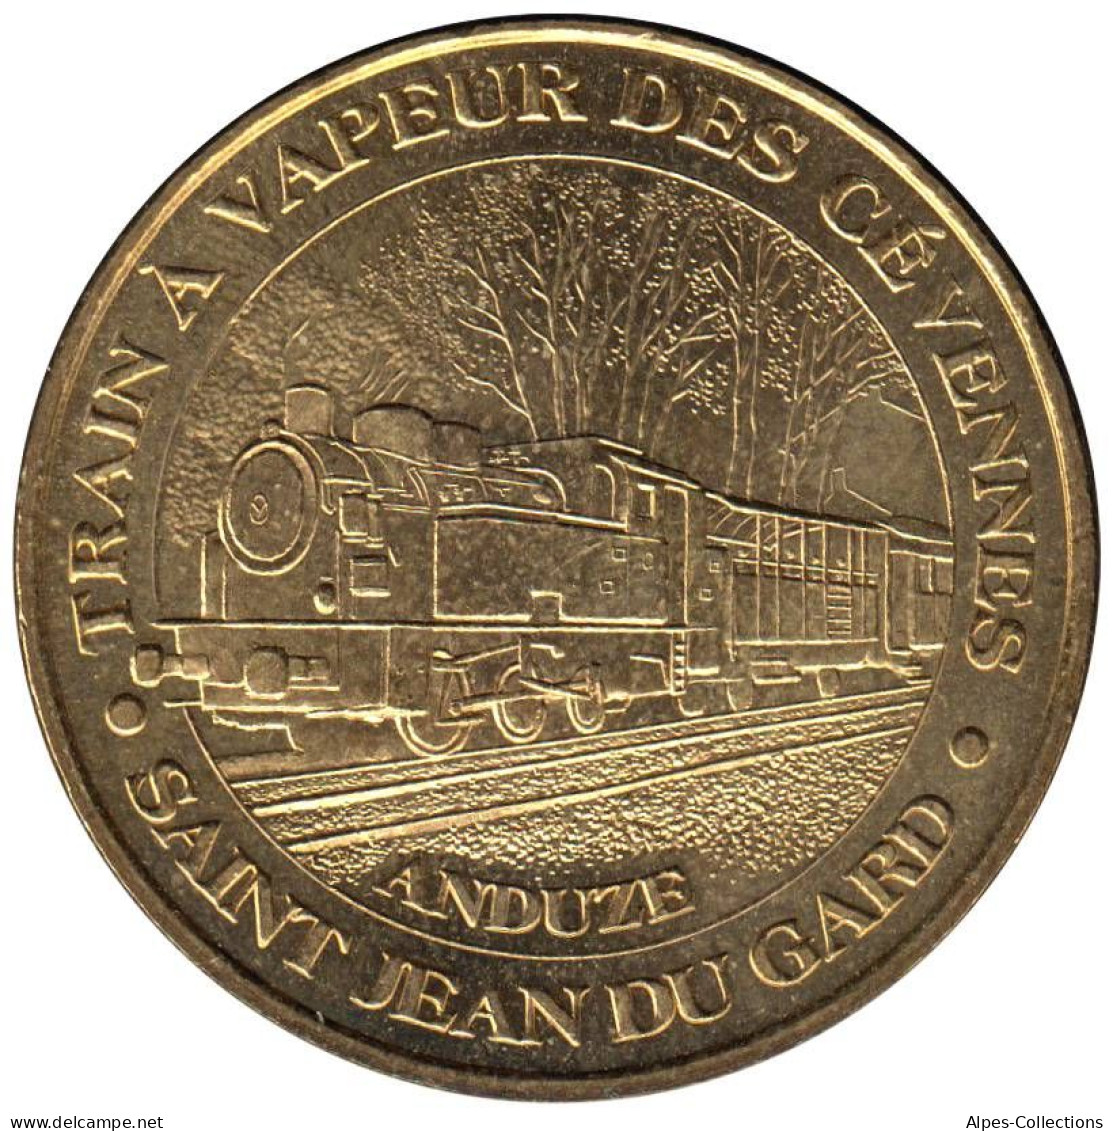 30-0541 - JETON TOURISTIQUE MDP - Anduze - Train à Vapeur Des Cévennes - 2006.1 - 2006